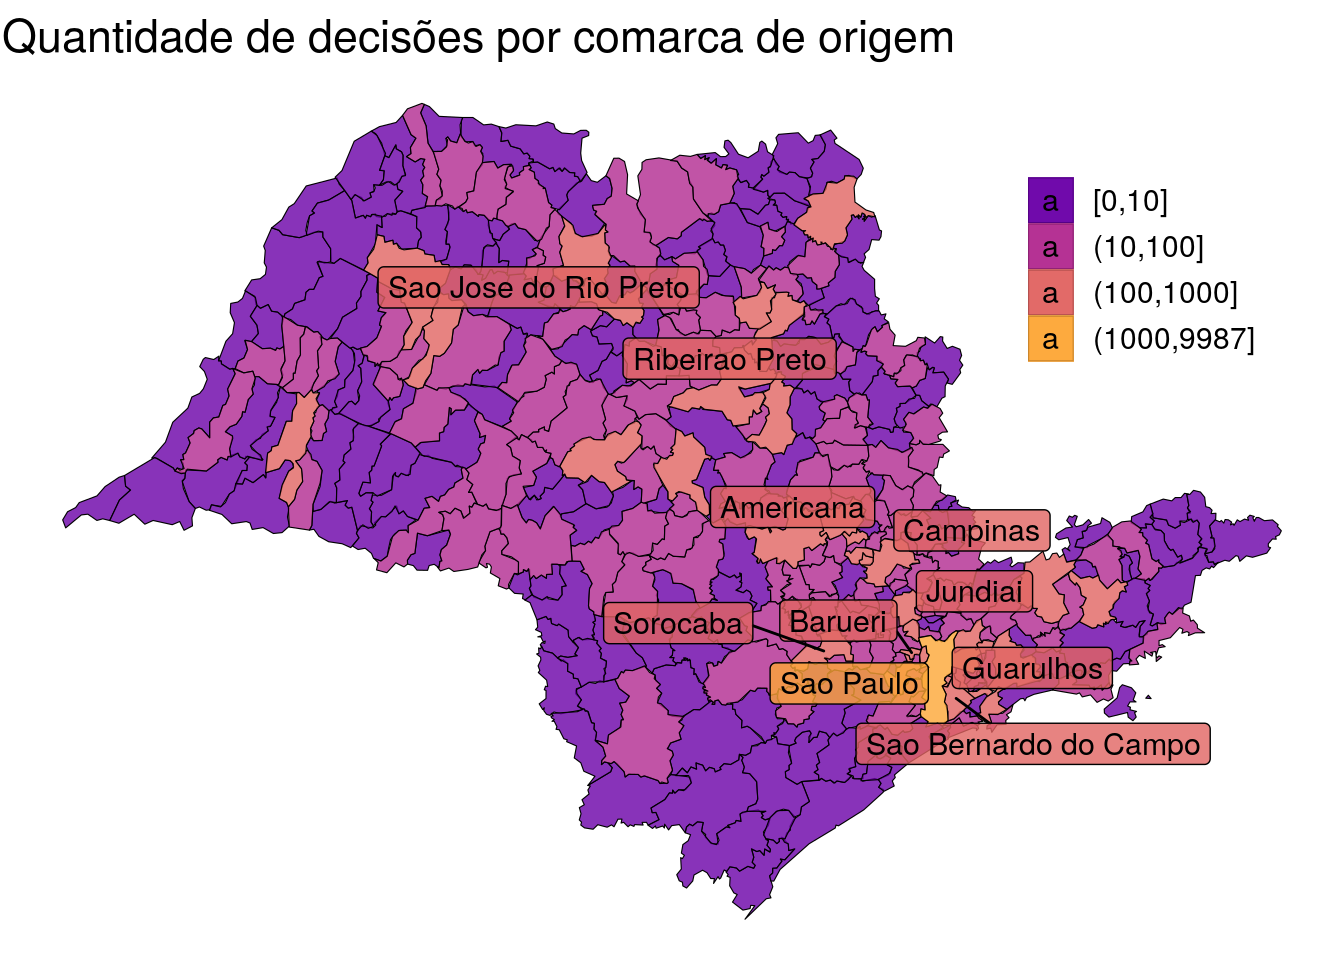 Figura 3: Quantidade de agravos por comarca de origem.